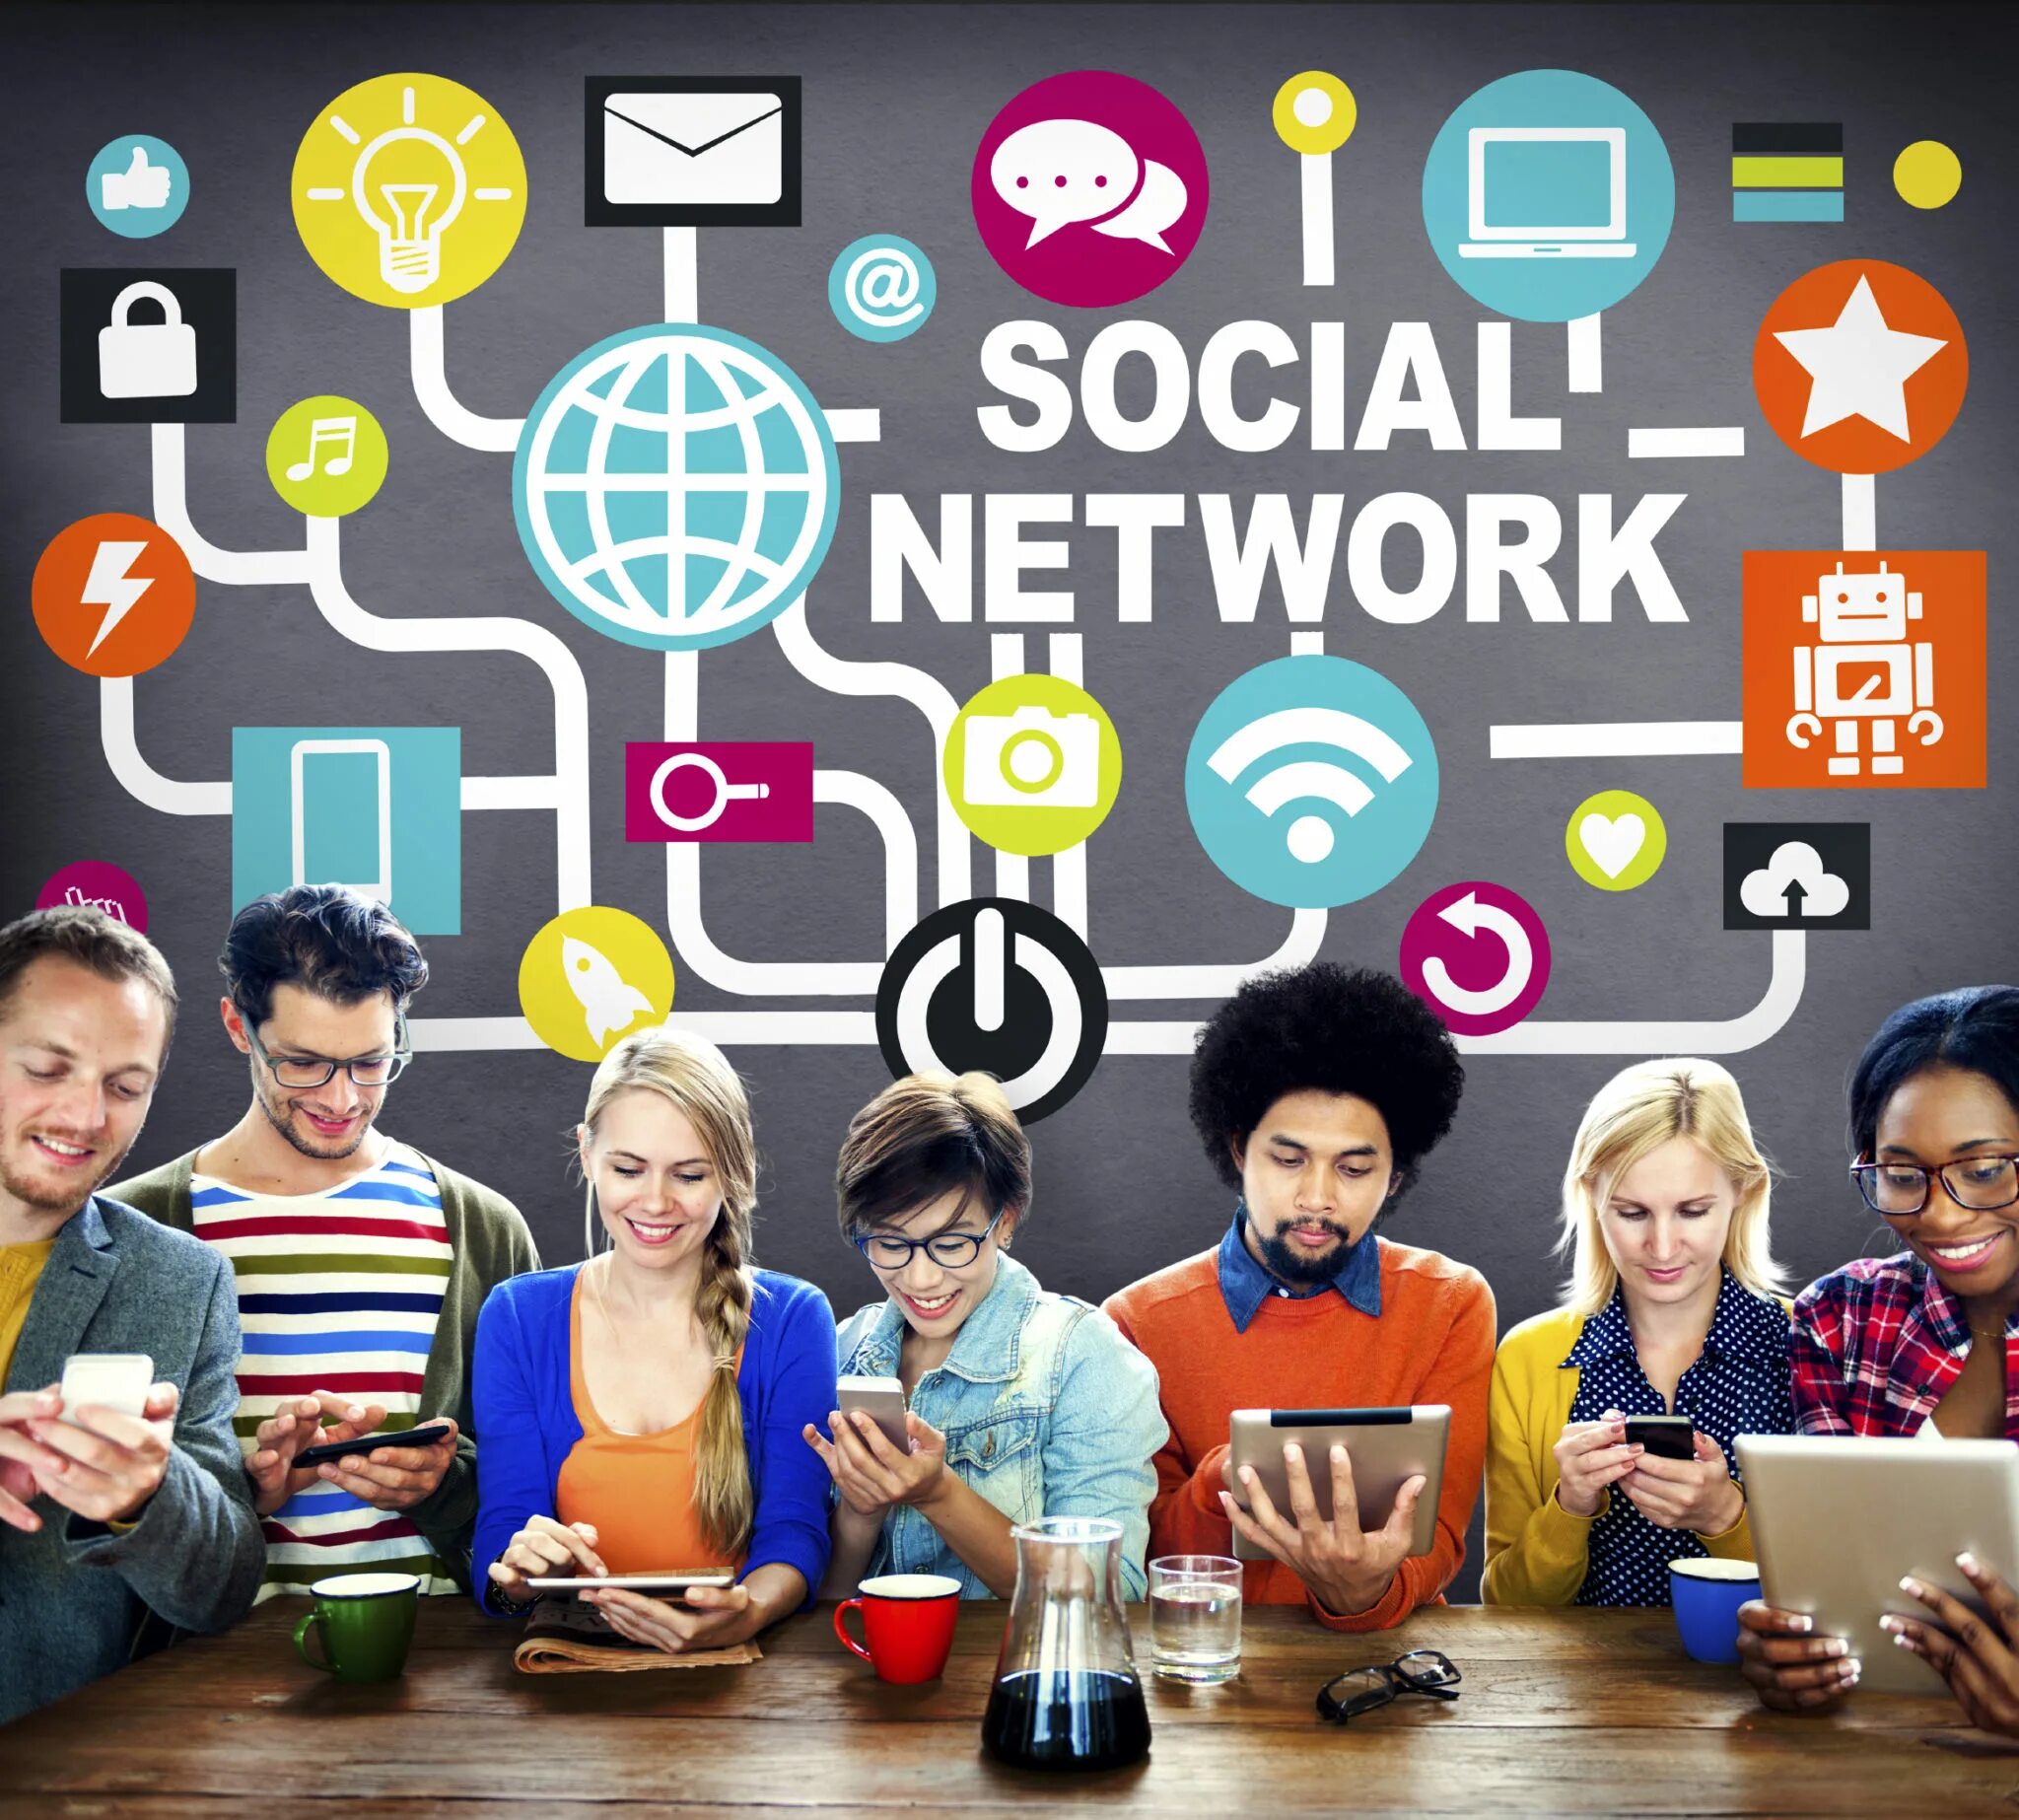 В социальных сетях. Социальный. Социальная сеть (интернет). Сообщества в социальных сетях. Shows social